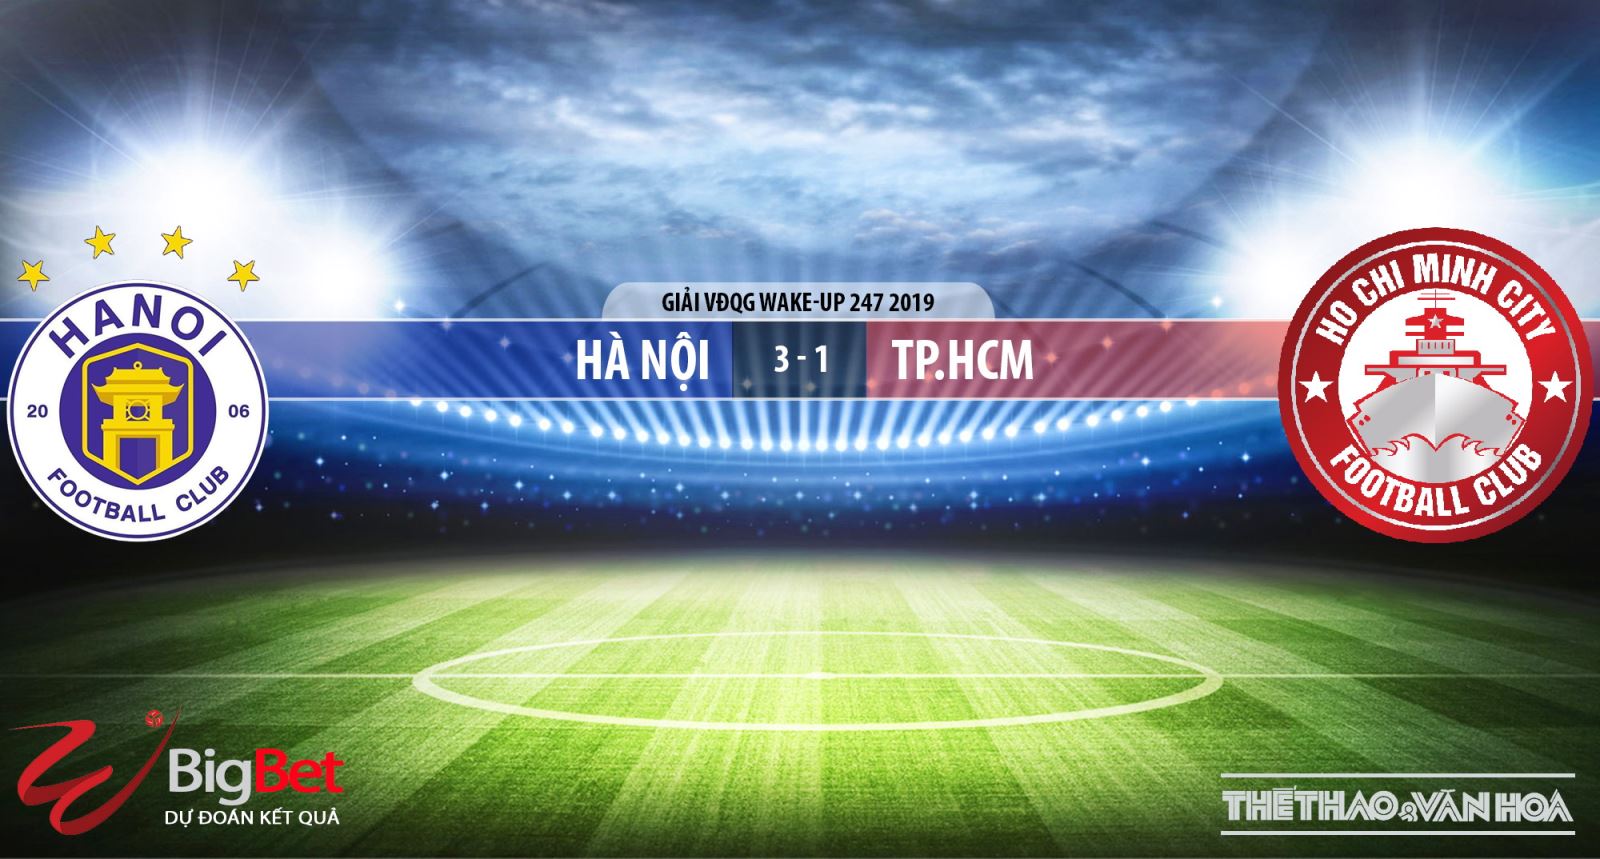 Hà Nội vs TPHCM, Hà Nội FC, TPHCM, truc tiep bong da, trực tiếp bóng đá, truc tiep Hà Nội, truc tiep Ha Noi vs TPHCM, v league 2019, truc tiep v league, VTV6, BDTV, FPT